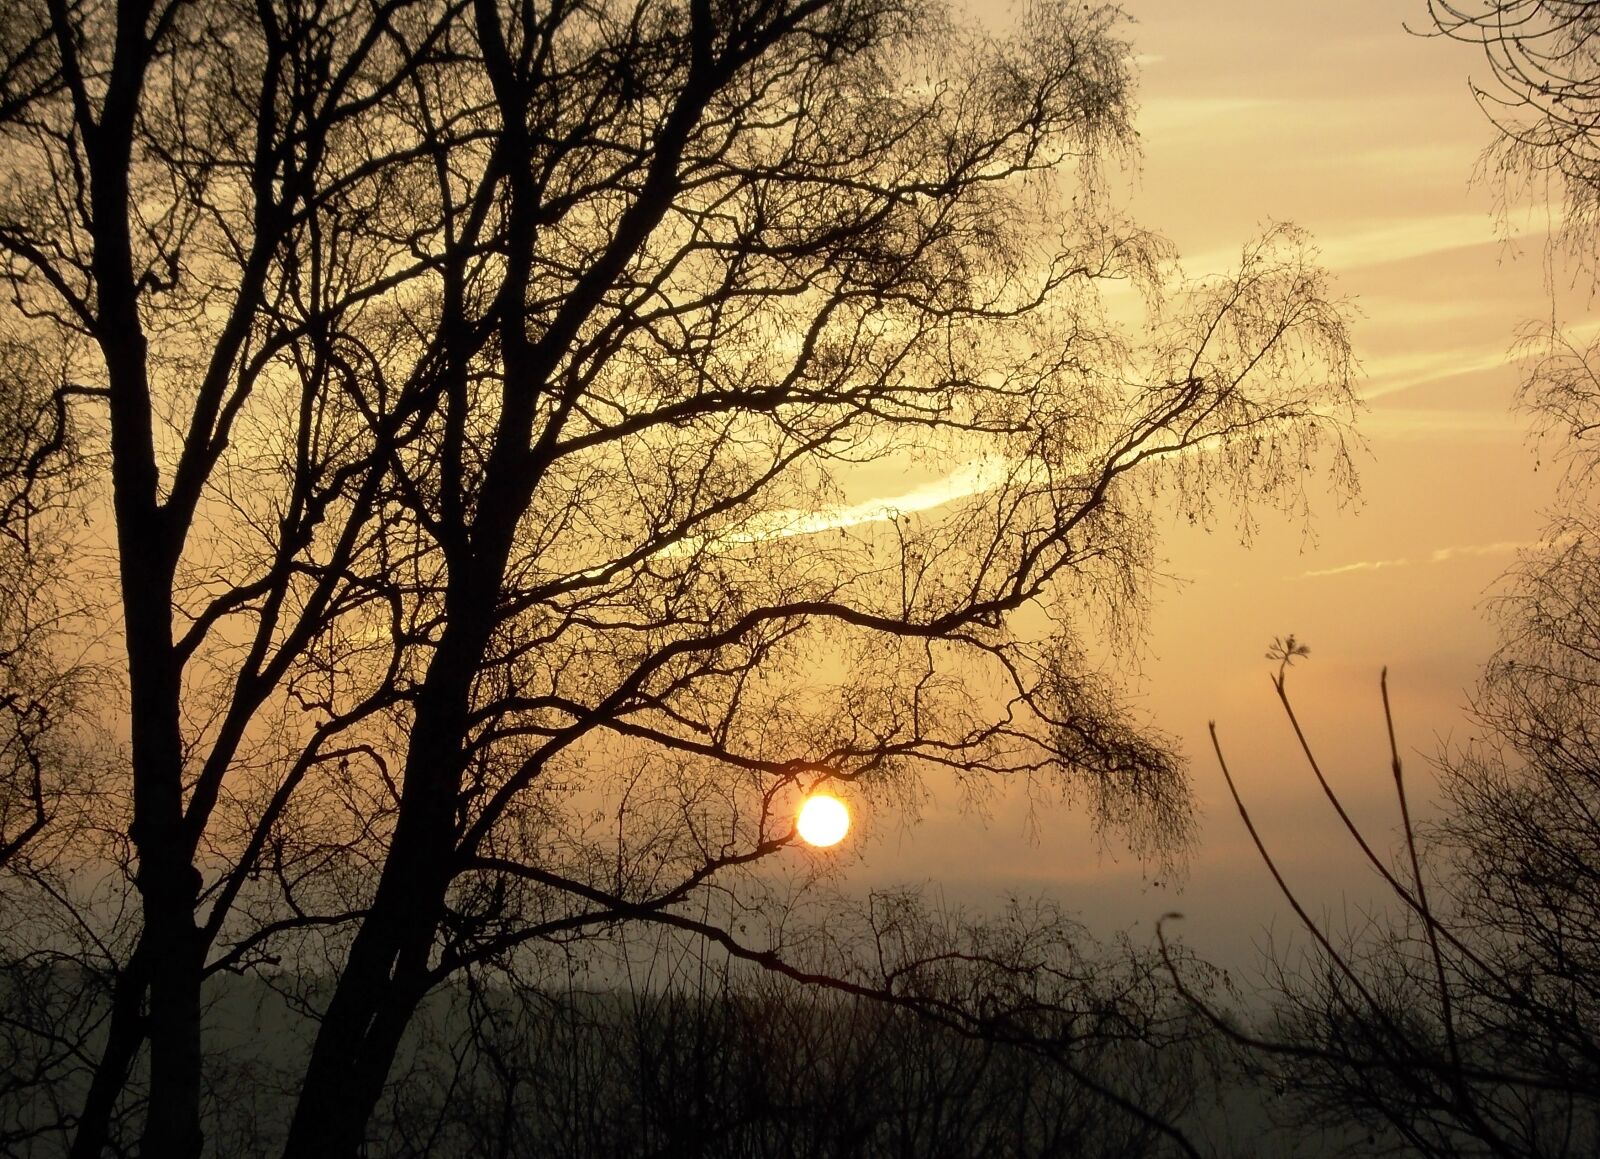 Nikon COOLPIX L23 sample photo. Sunrise, autumn, landscape photography